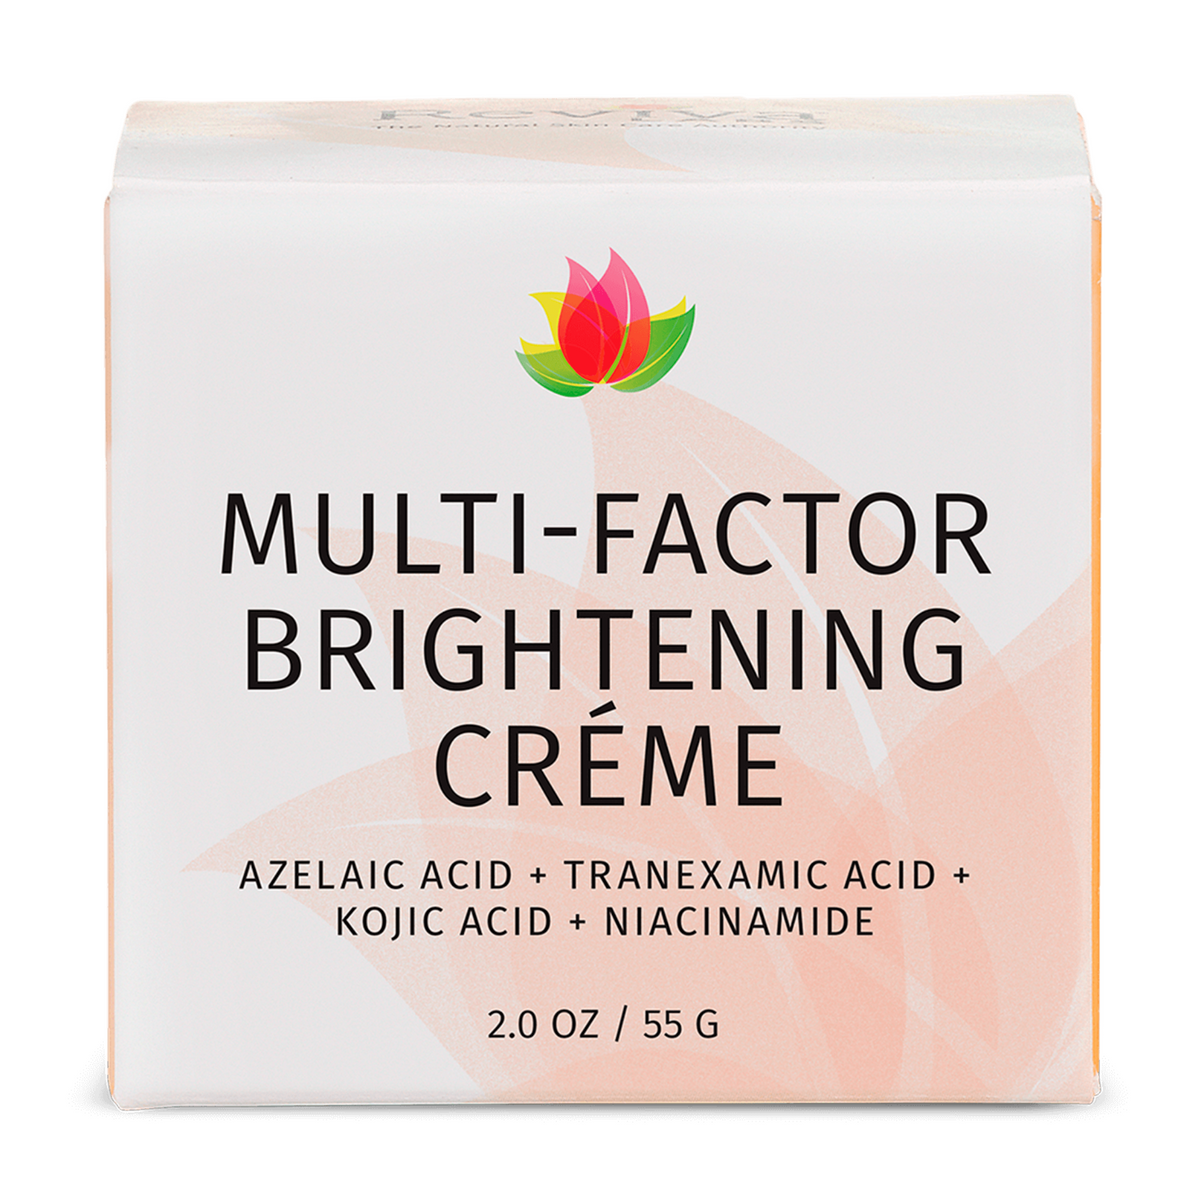 Primary Image of Multi-factor Brightening Creme